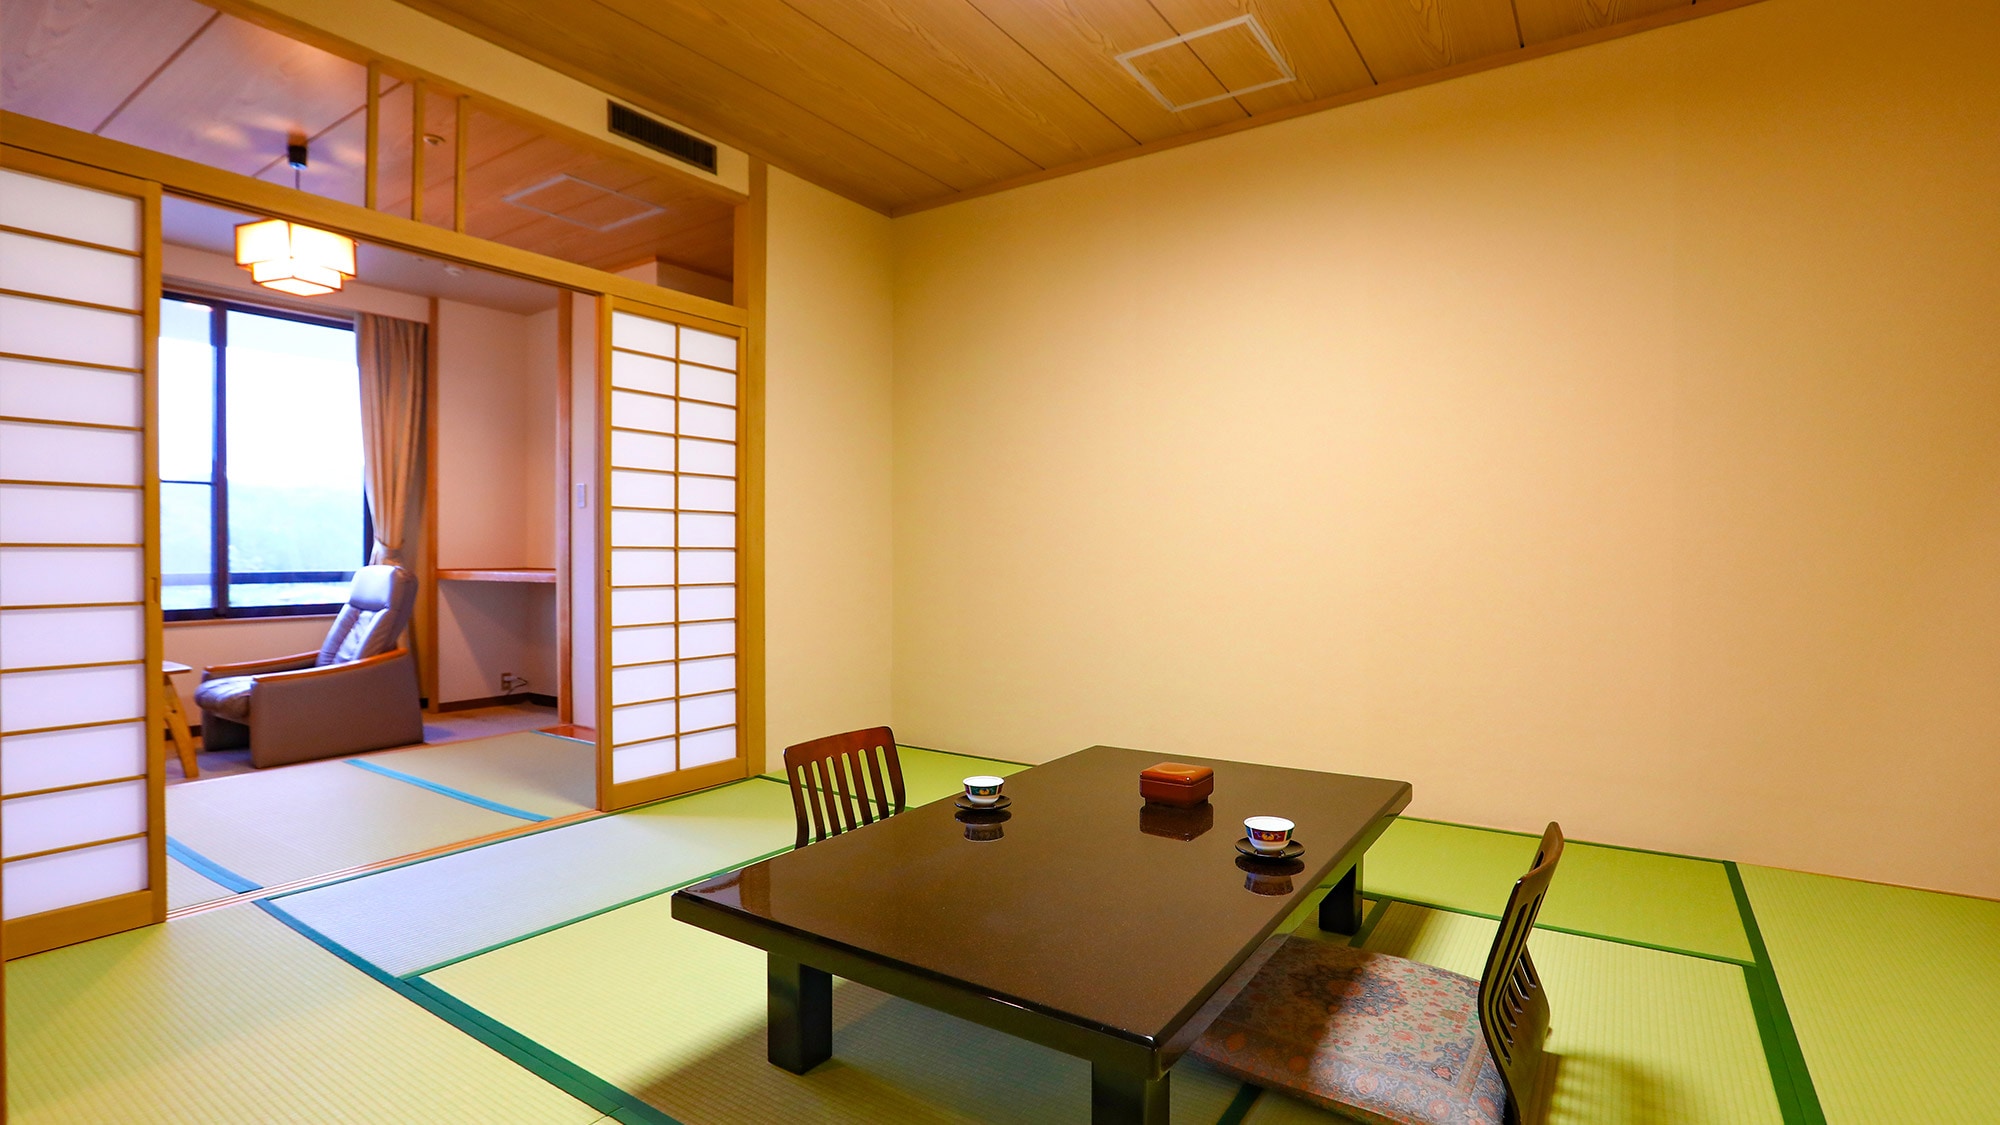 [ปลอดบุหรี่] ห้องสไตล์ญี่ปุ่น 10 เสื่อทาทามิ + 3 เสื่อทาทามิ (ตัวอย่าง) & hellip; ห้องสไตล์ญี่ปุ่นที่กว้างขวางพร้อมบรรยากาศแบบญี่ปุ่นที่สะดวกสบาย